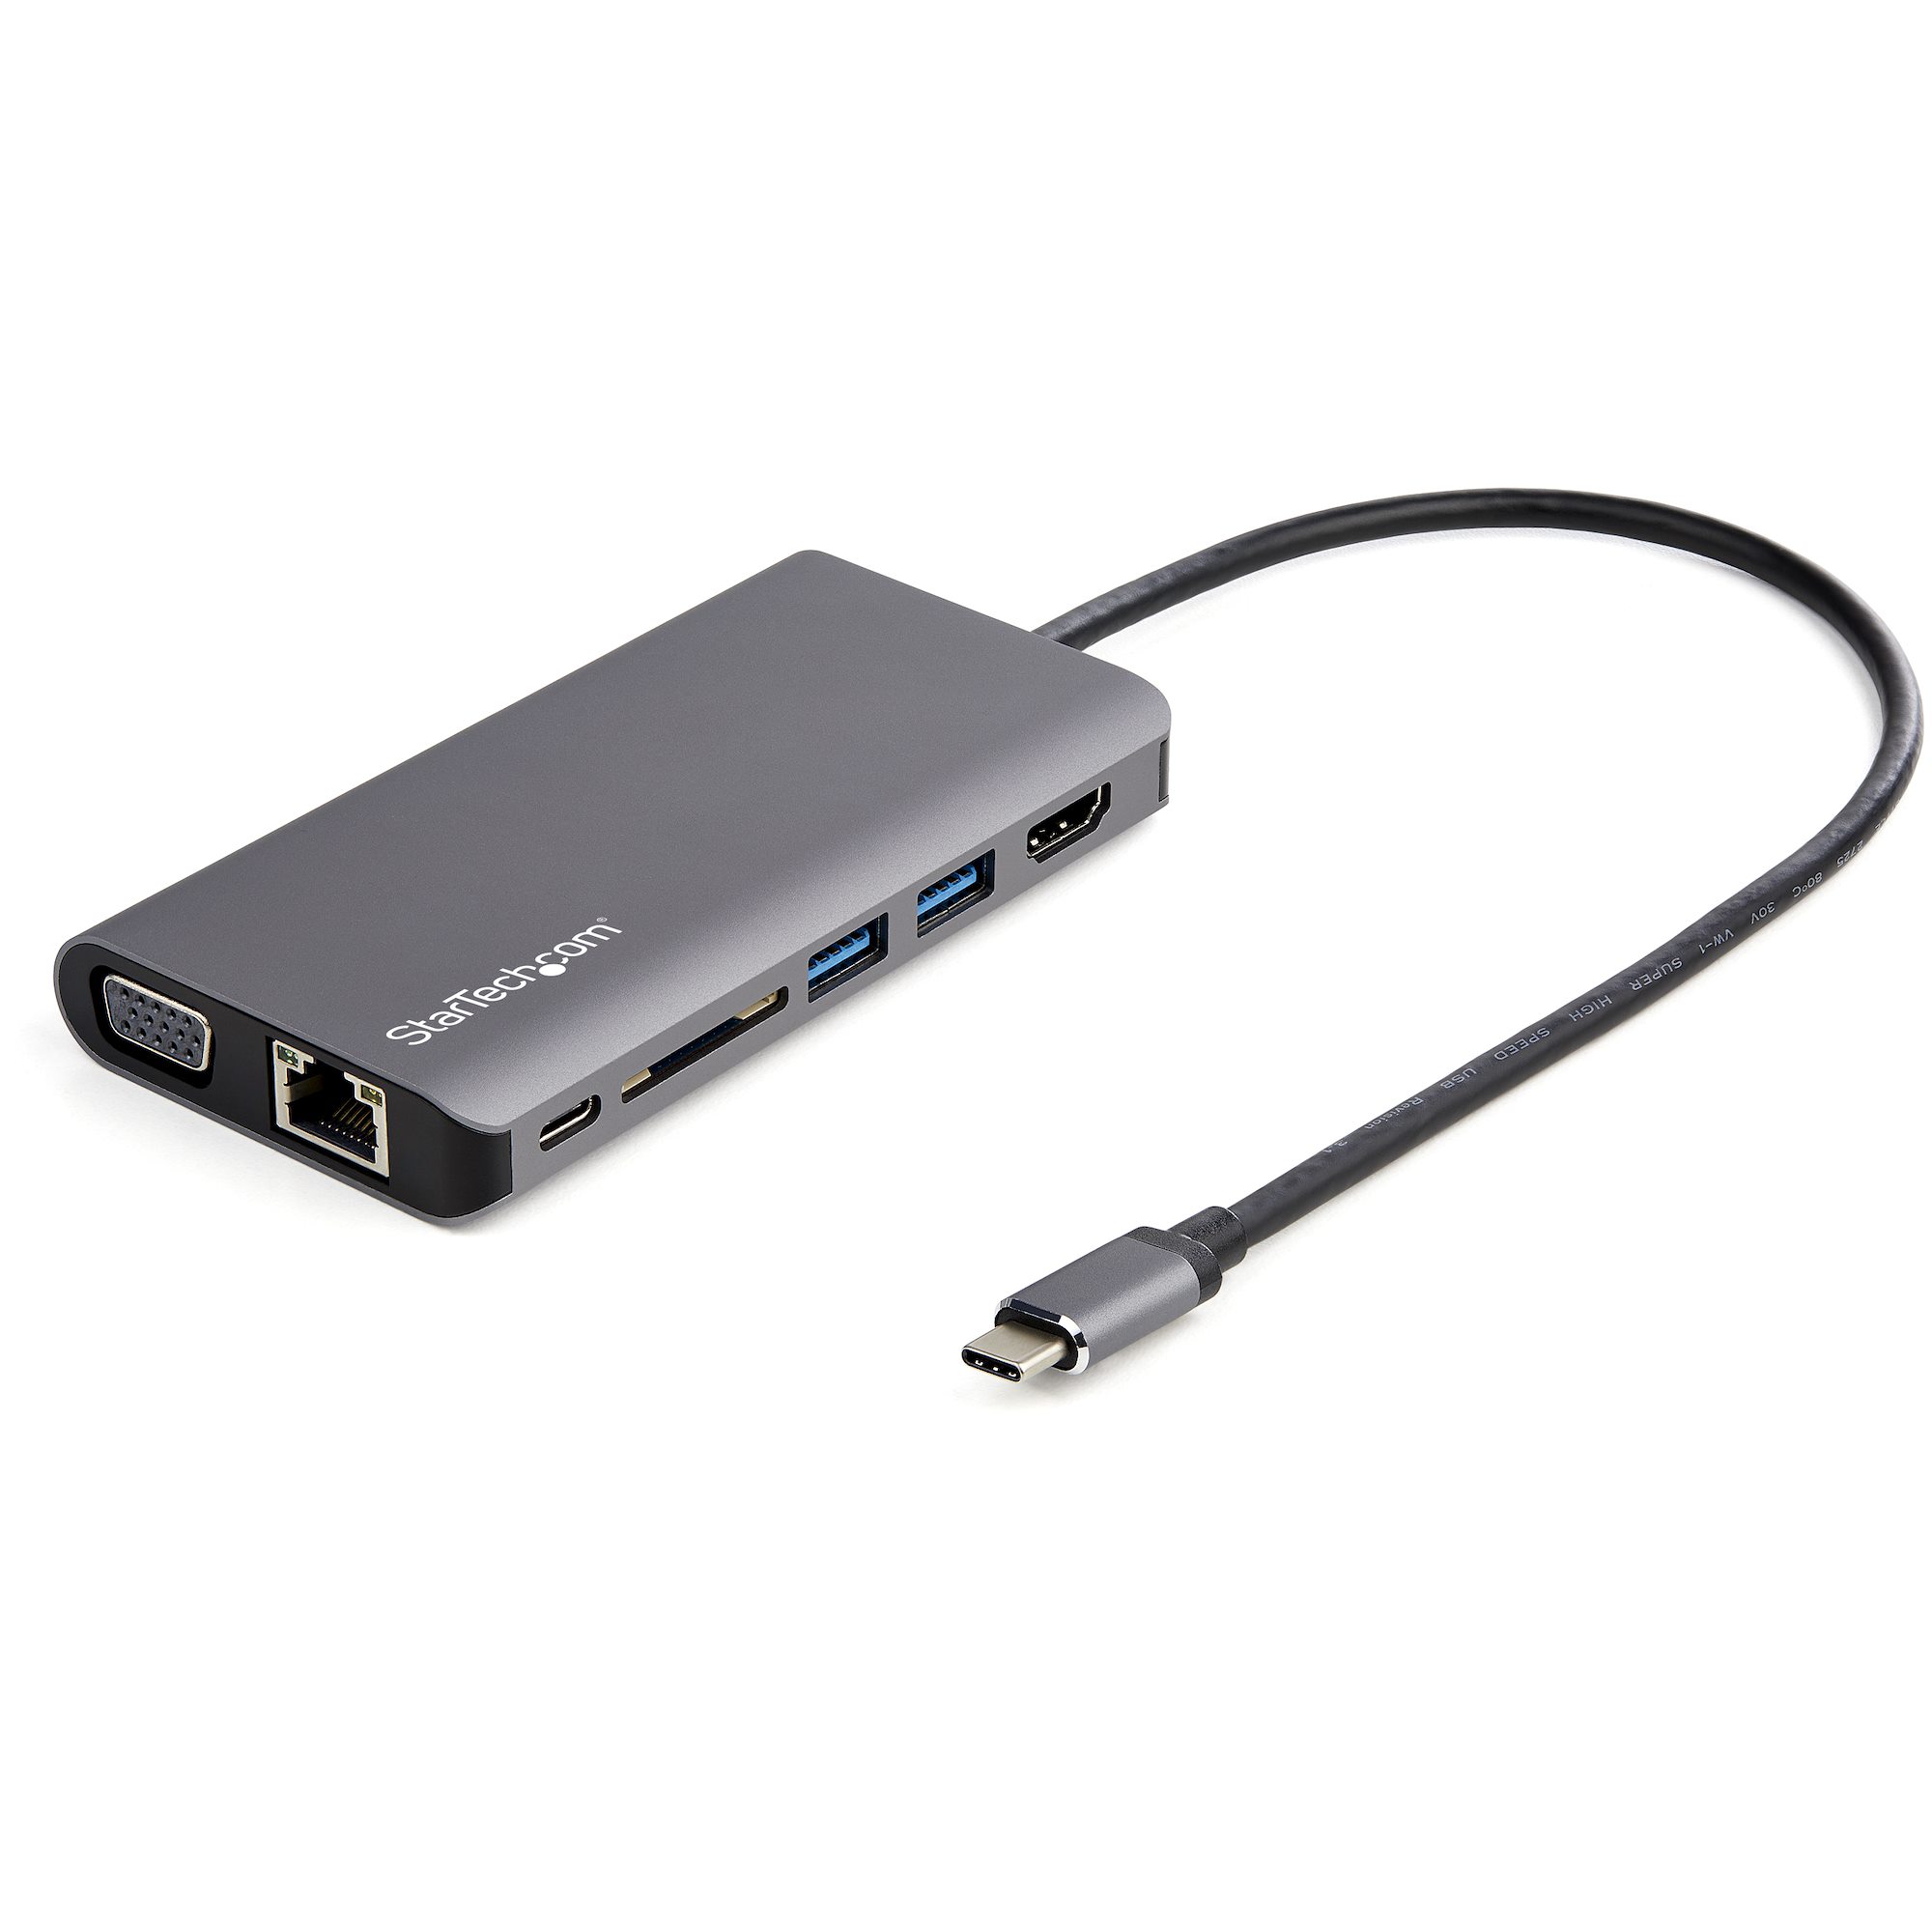 USB-Cマルチ変換アダプタ HDMIまたはVGA出力対応 100W PD対応 USB-Cマルチポートアダプター 日本